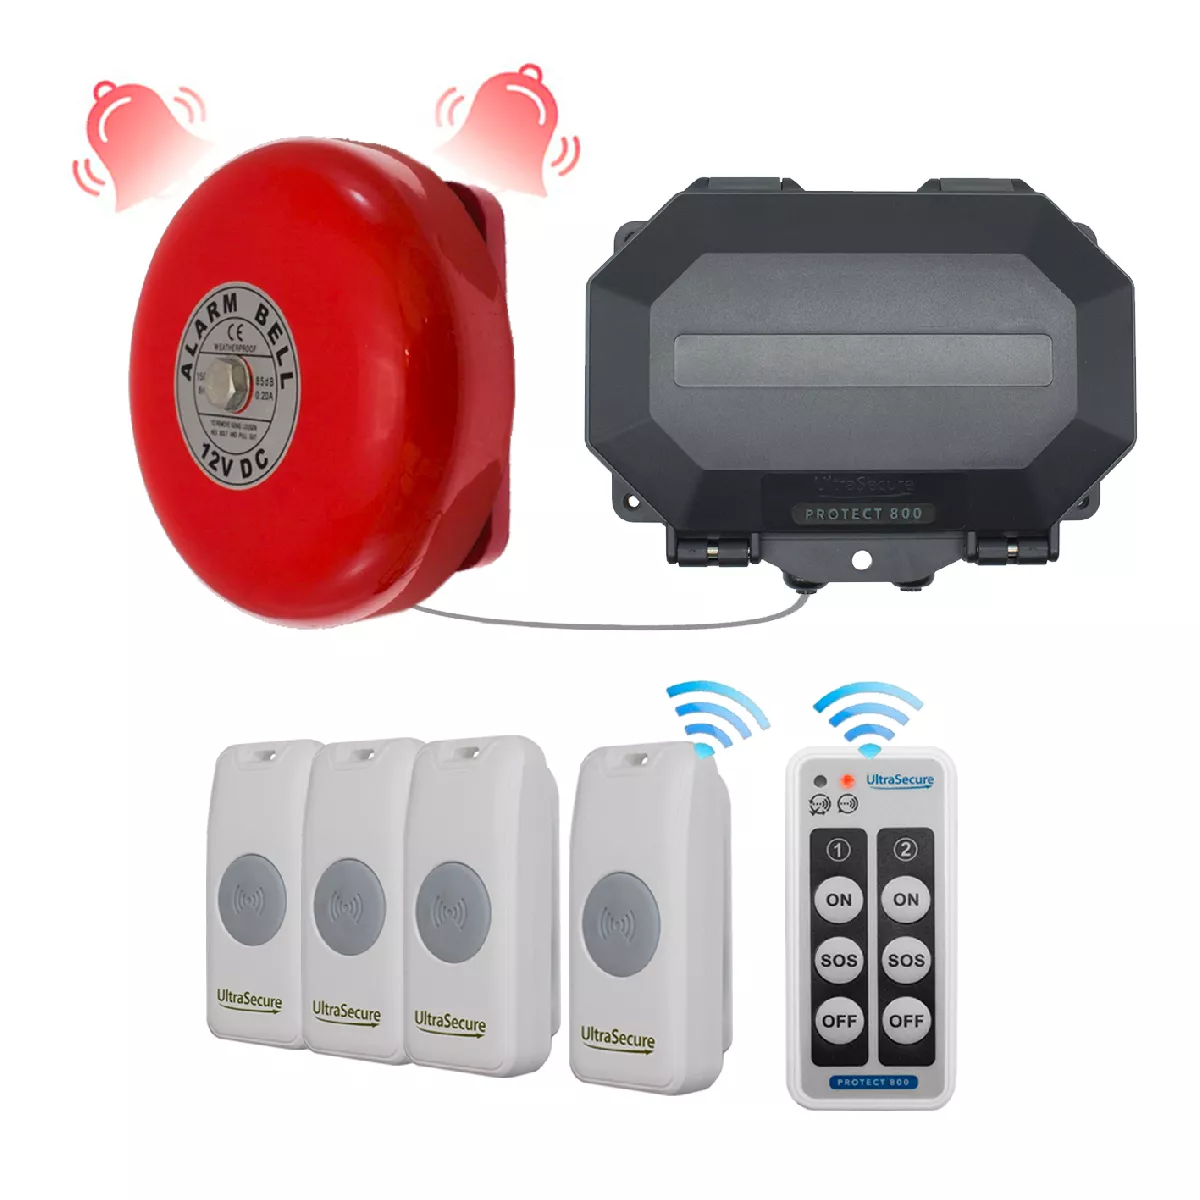 Système d'appel sonnette sans-fil 800 mètres IP56 cloche entrepôt / magasin  - 4 boutons / Durée ajustable (PROTECT 800)